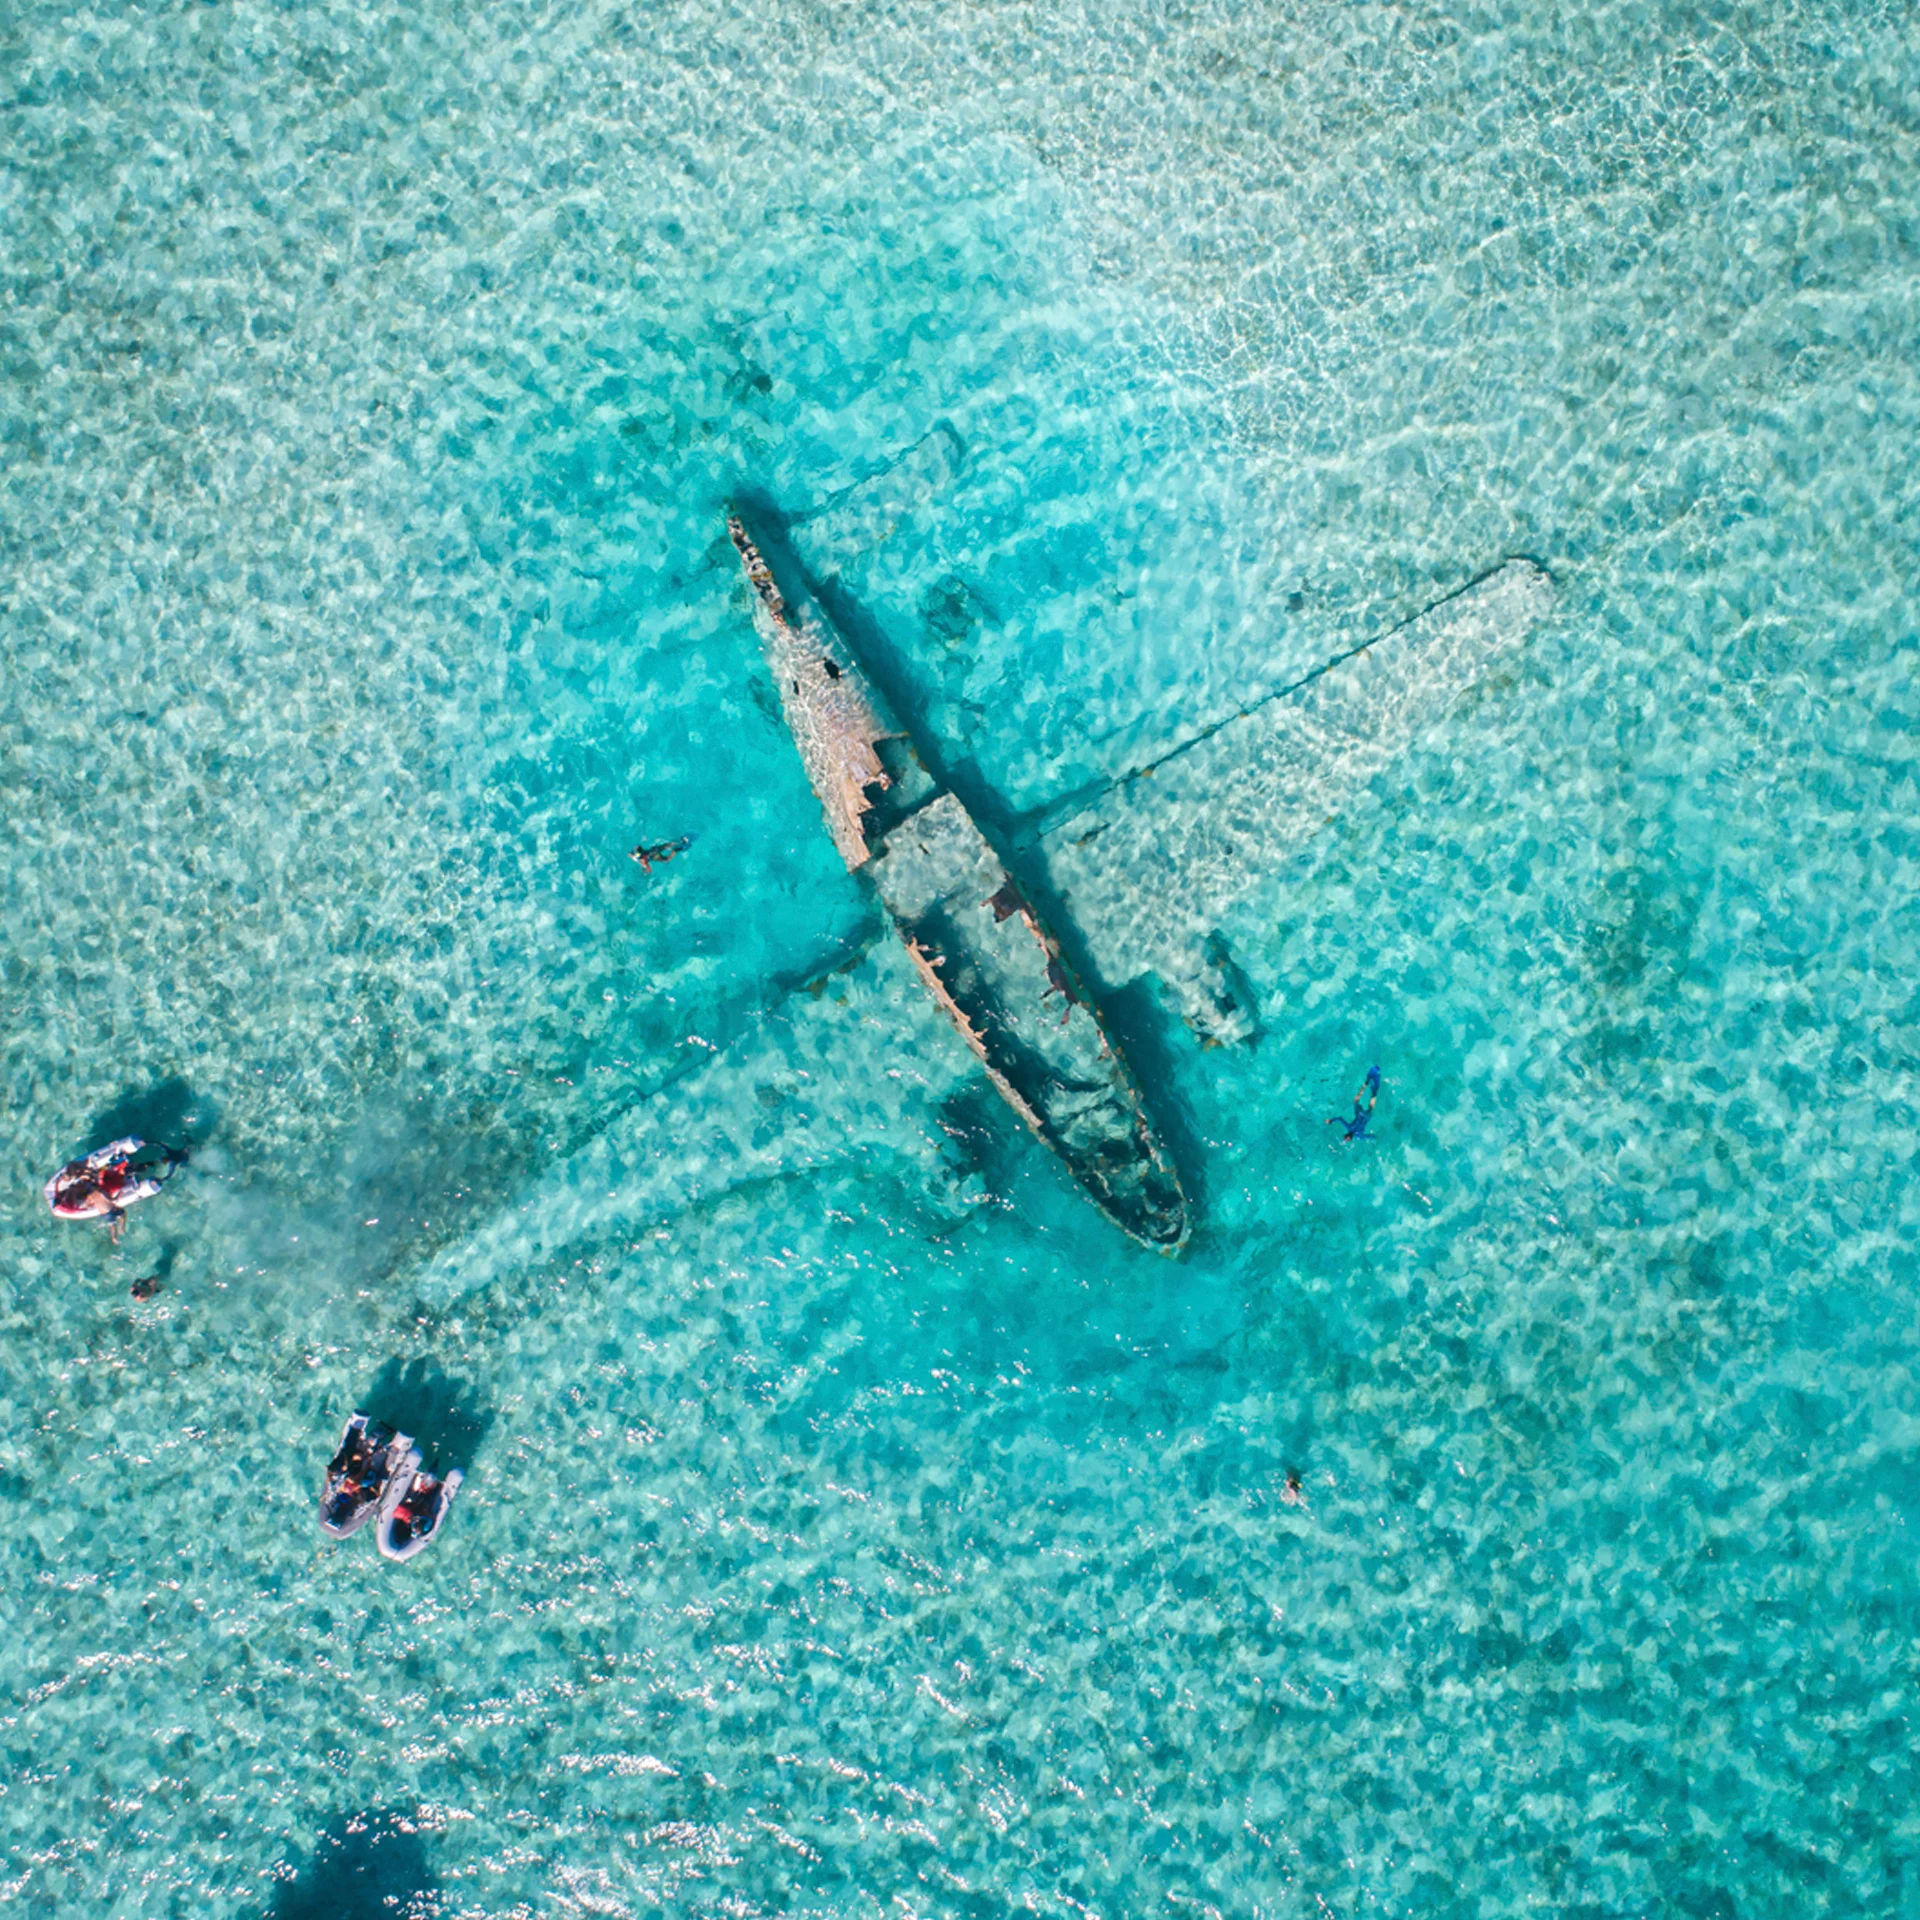 Exumas Flugzeug im Wasser Abenteuer